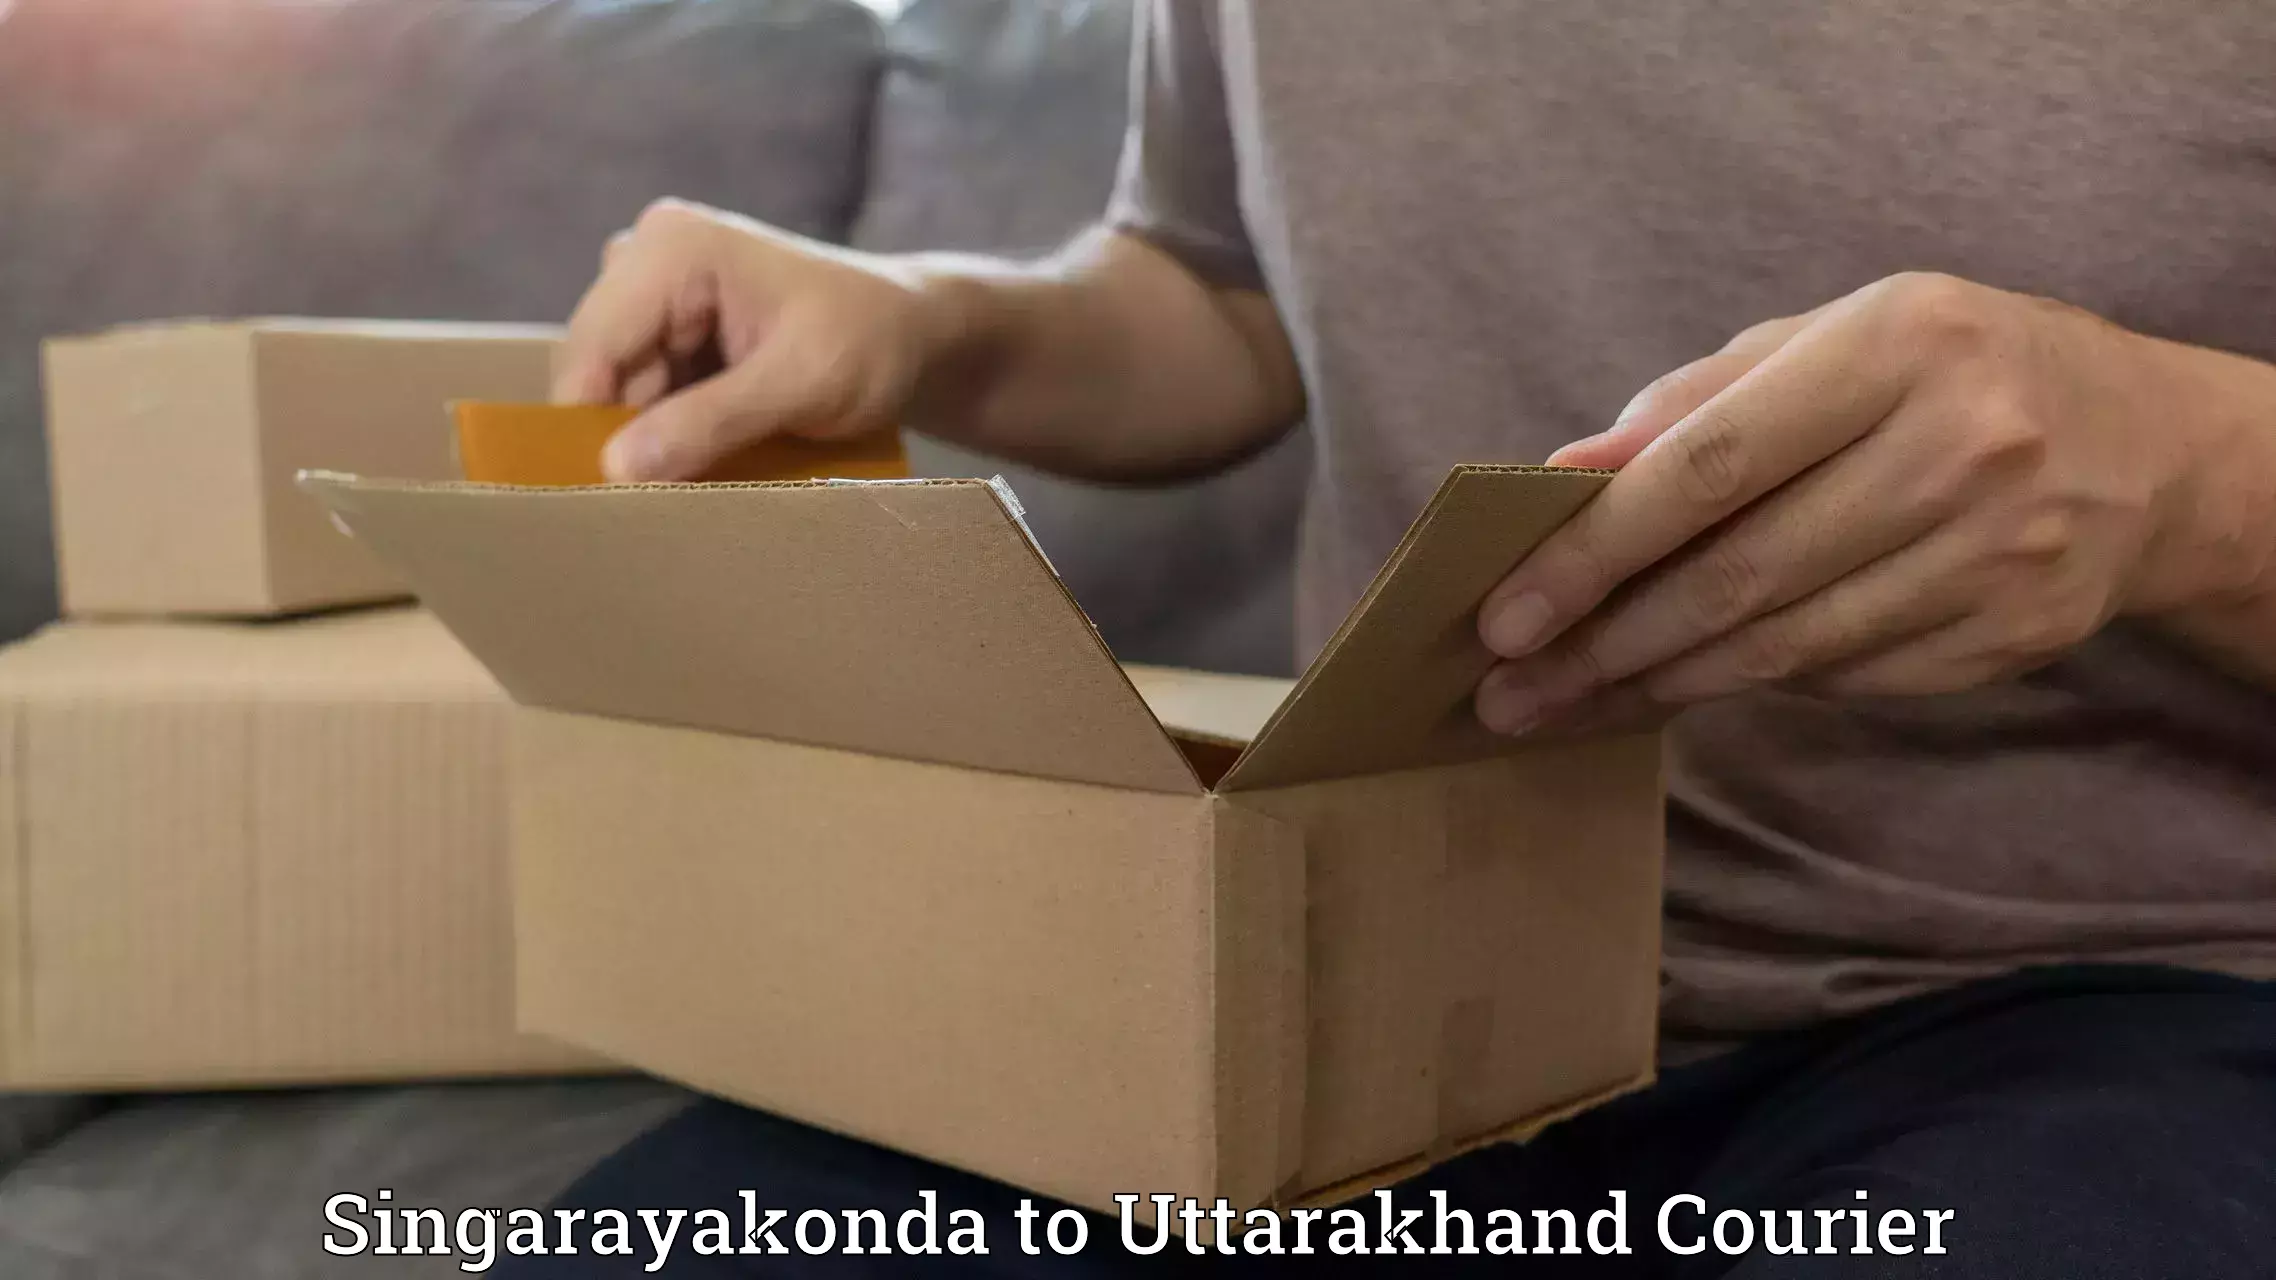 Nationwide courier service Singarayakonda to Kotdwara